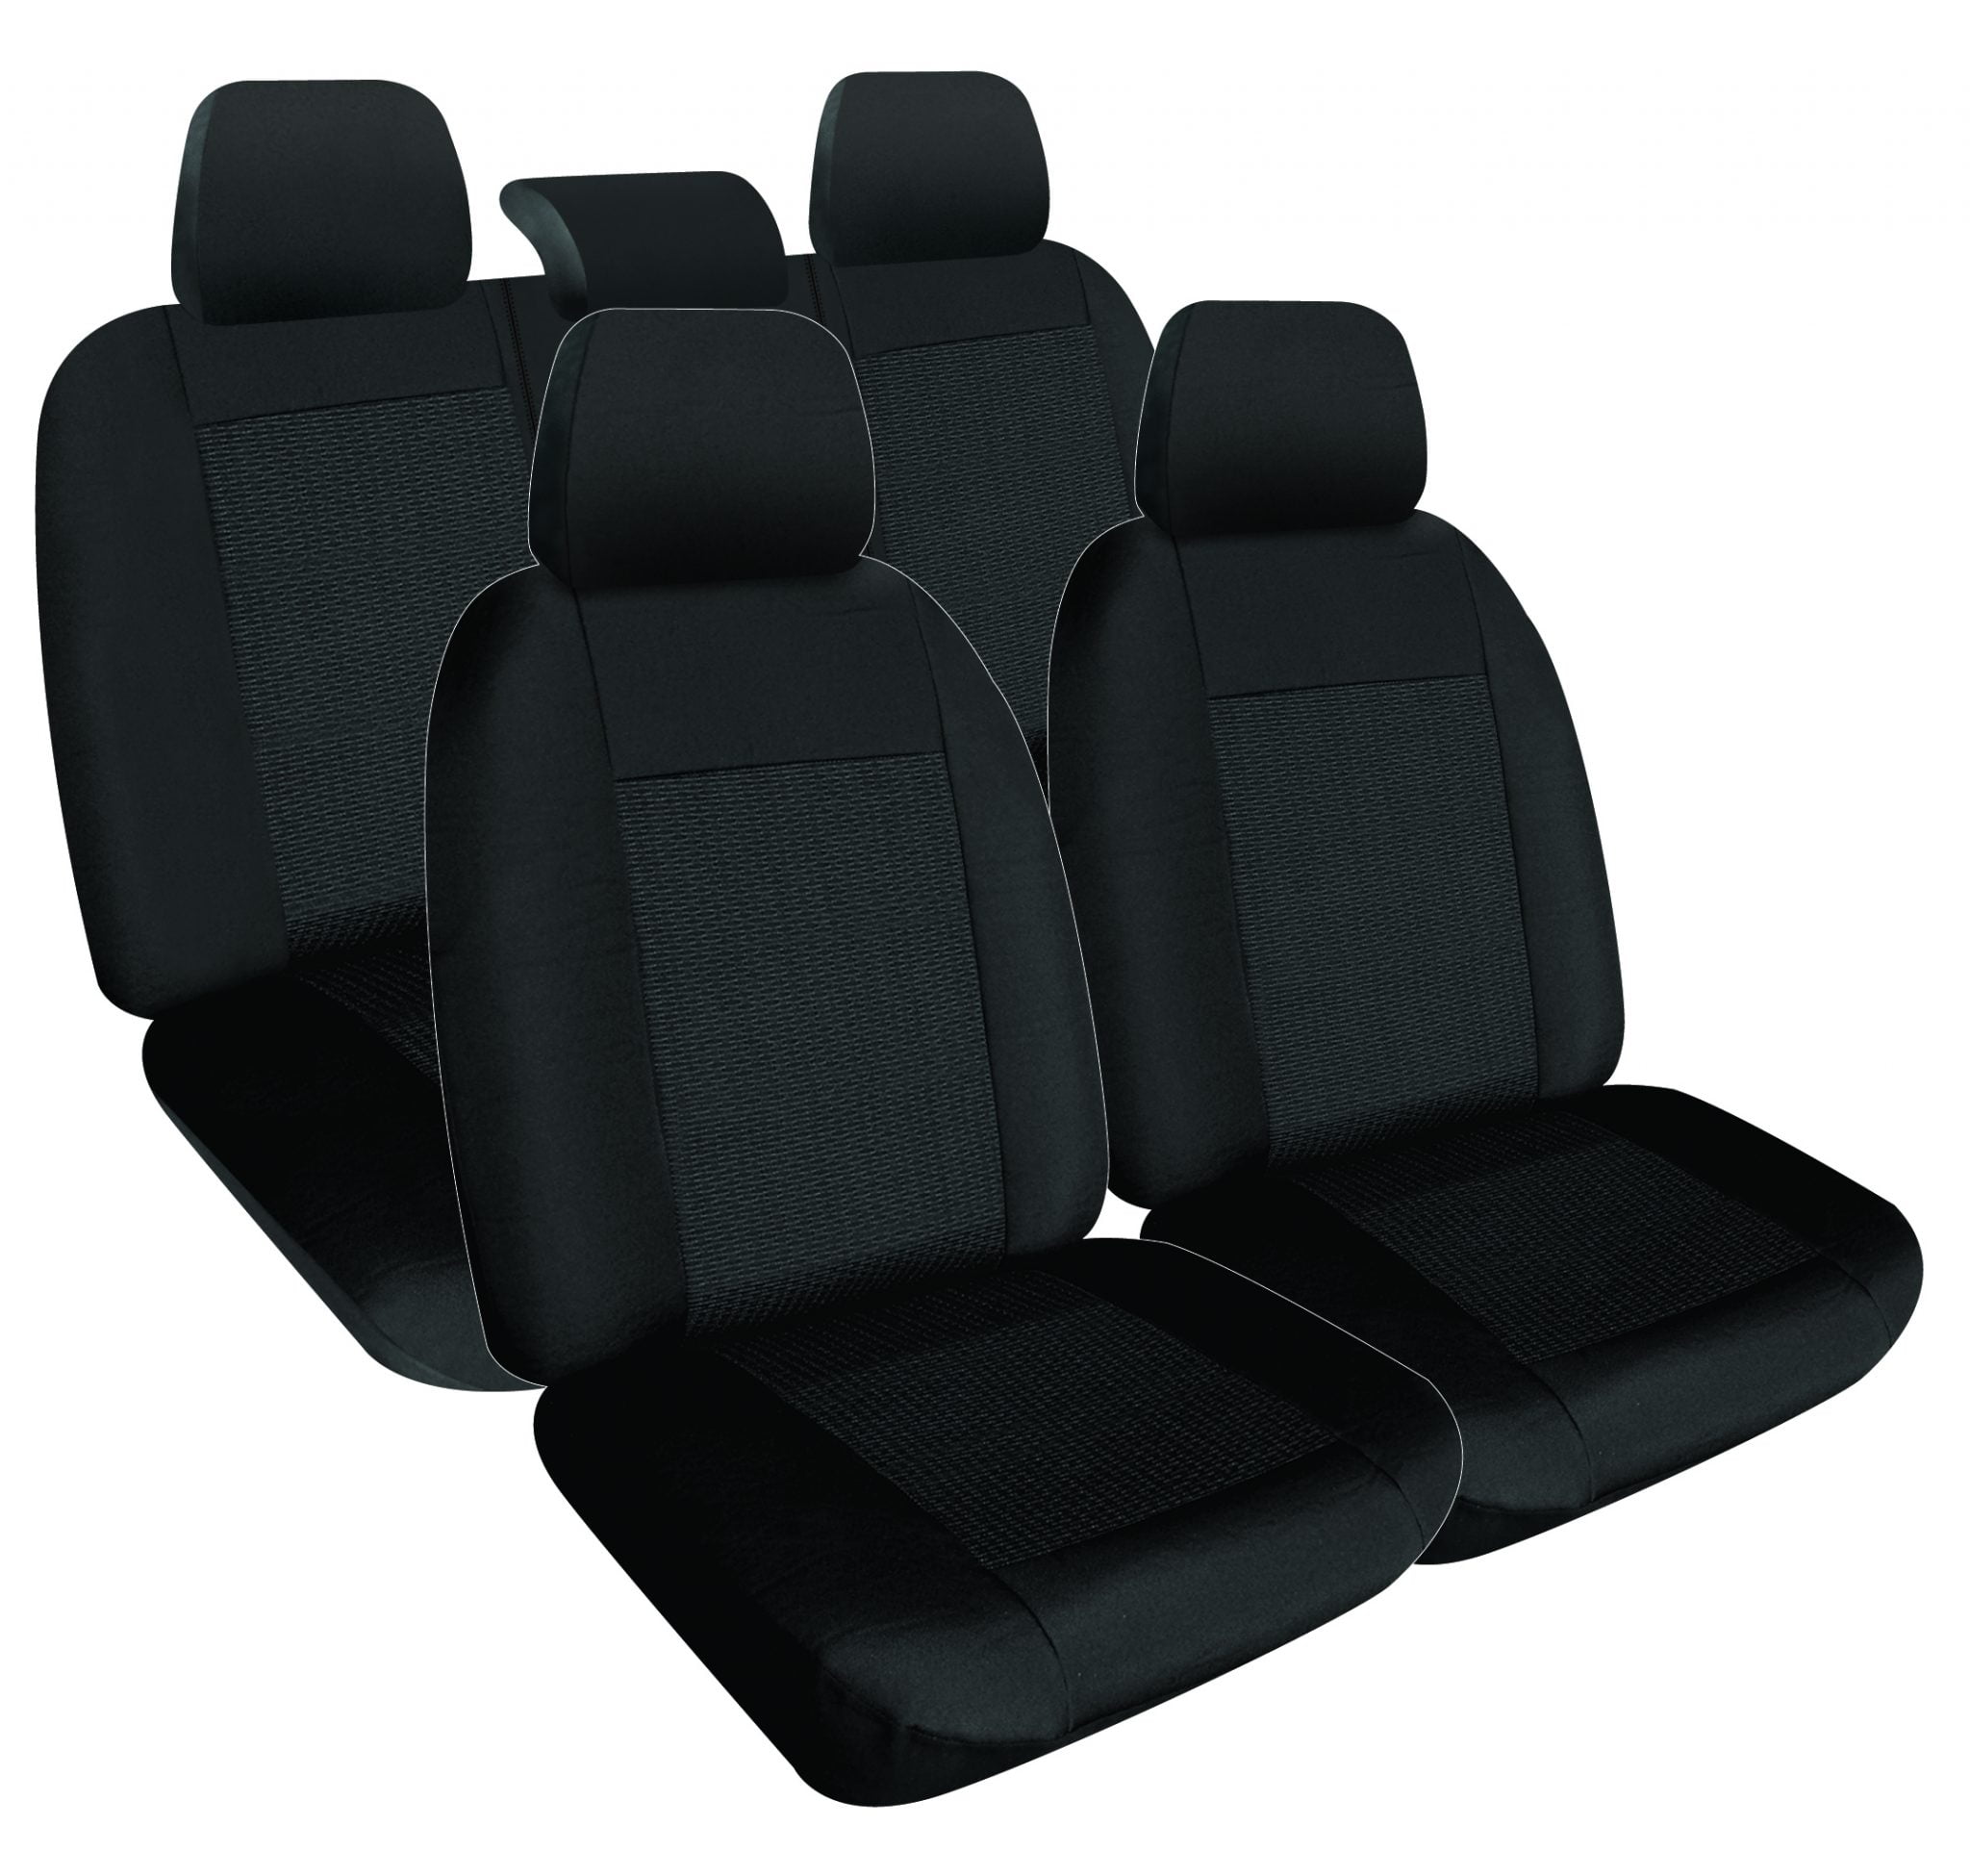 HONDA ACCORD SEDAN (CP) VTI 2008-2013 FRONT & REAR SEAT COVERS Seat Covers For A 2008 Honda Accord